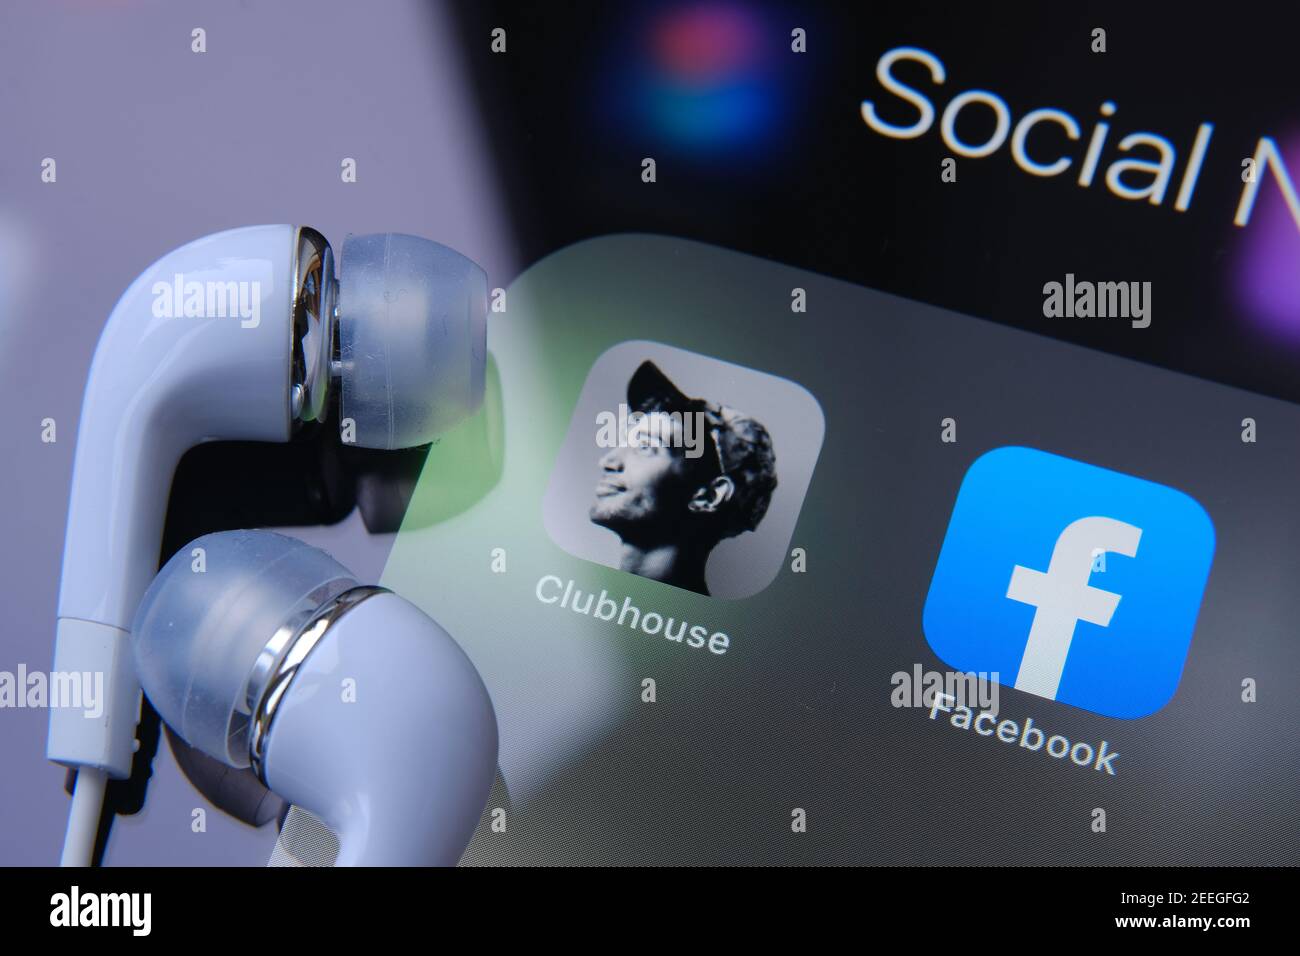 Kopfhörer werden oben auf dem Bildschirm neben der Clubhouse-App und der Facebook-App platziert. Konzept für den Wettbewerb. Stafford, Vereinigtes Königreich - 15. Februar 2021. Stockfoto